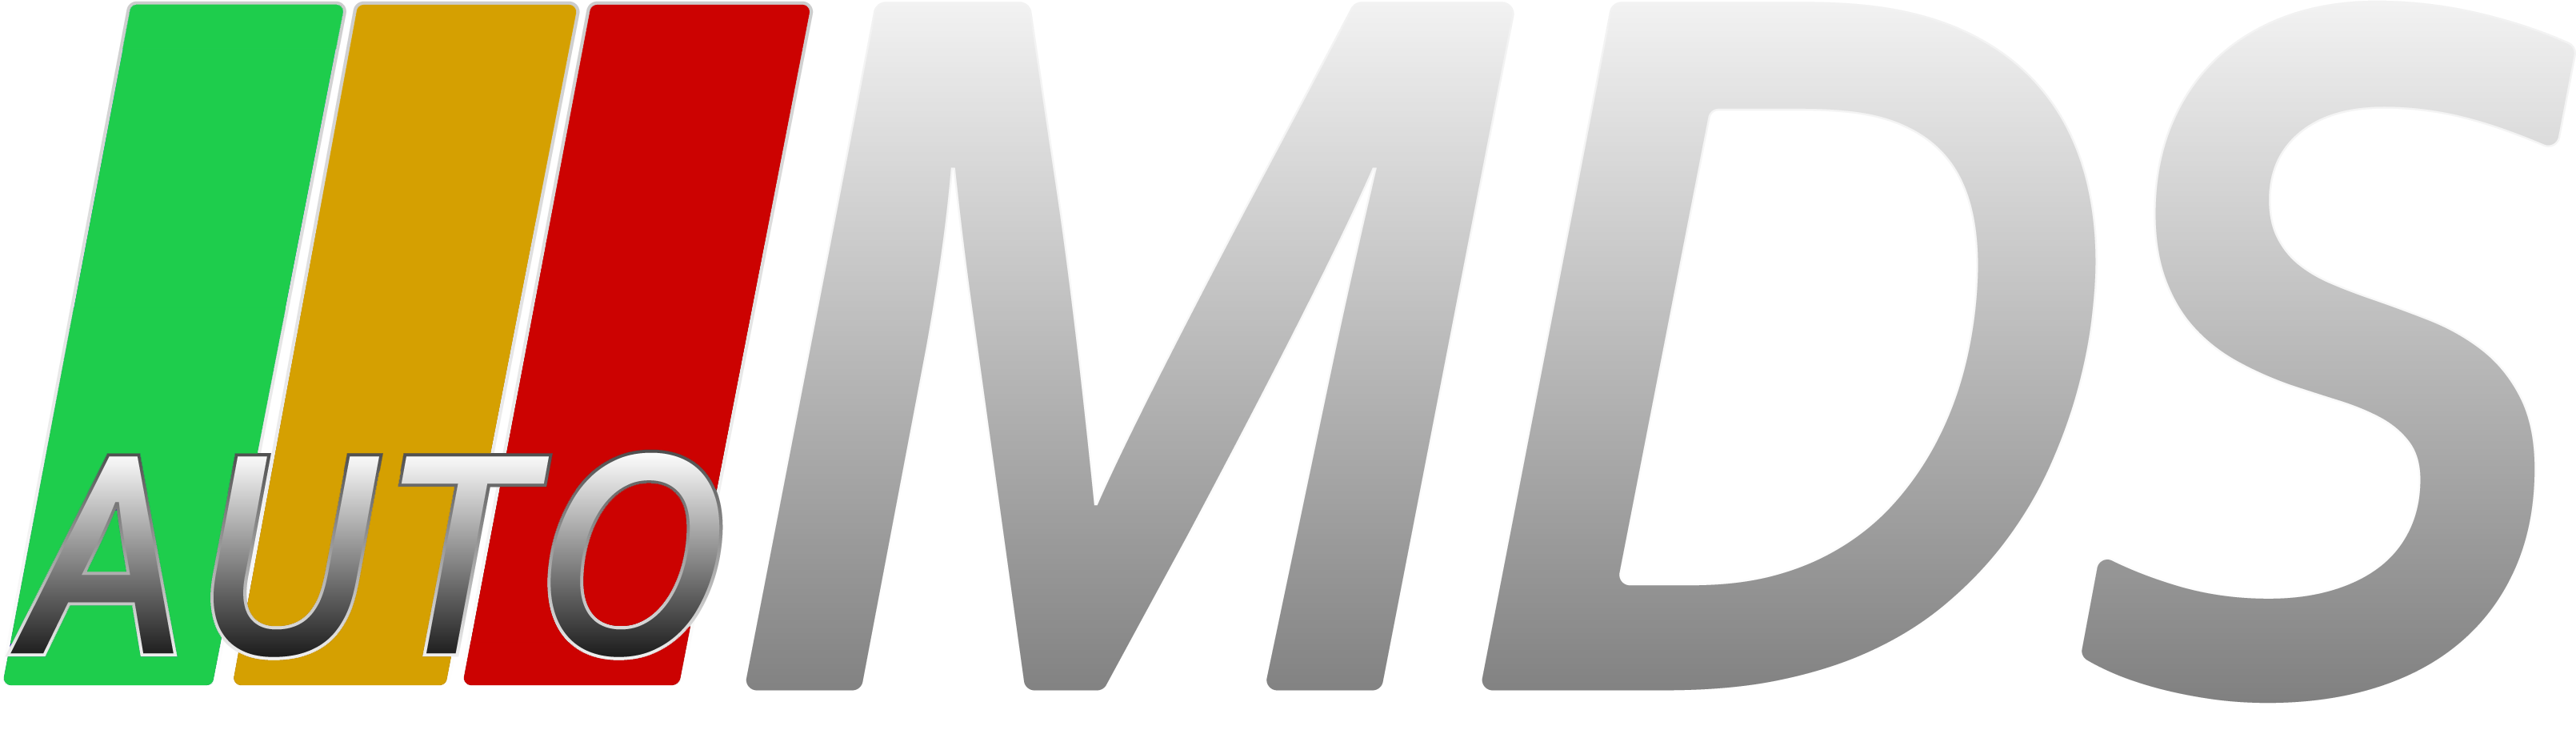 mds_logo_dark_v_2